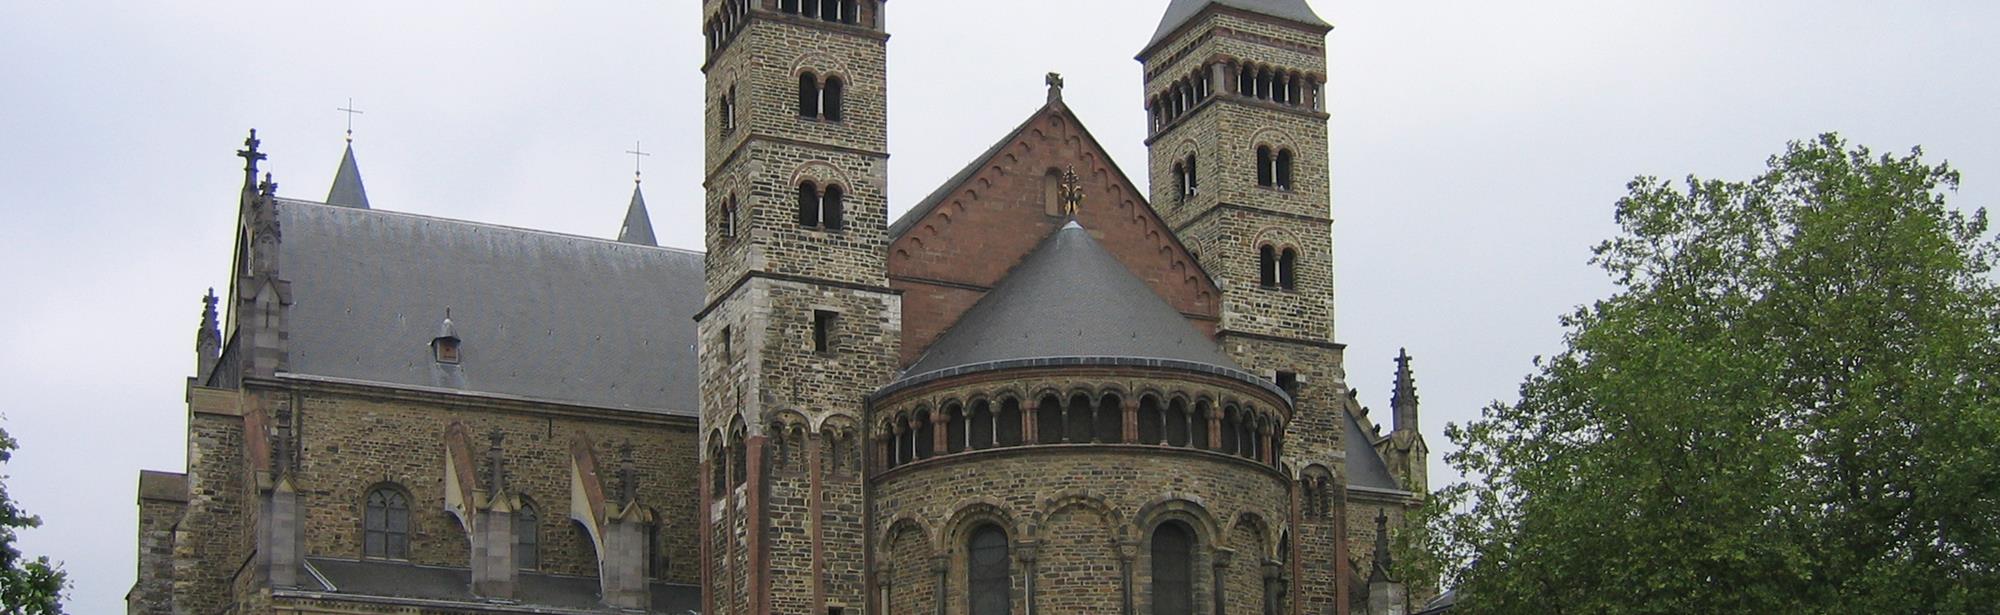 Basiliek van St. Servaas